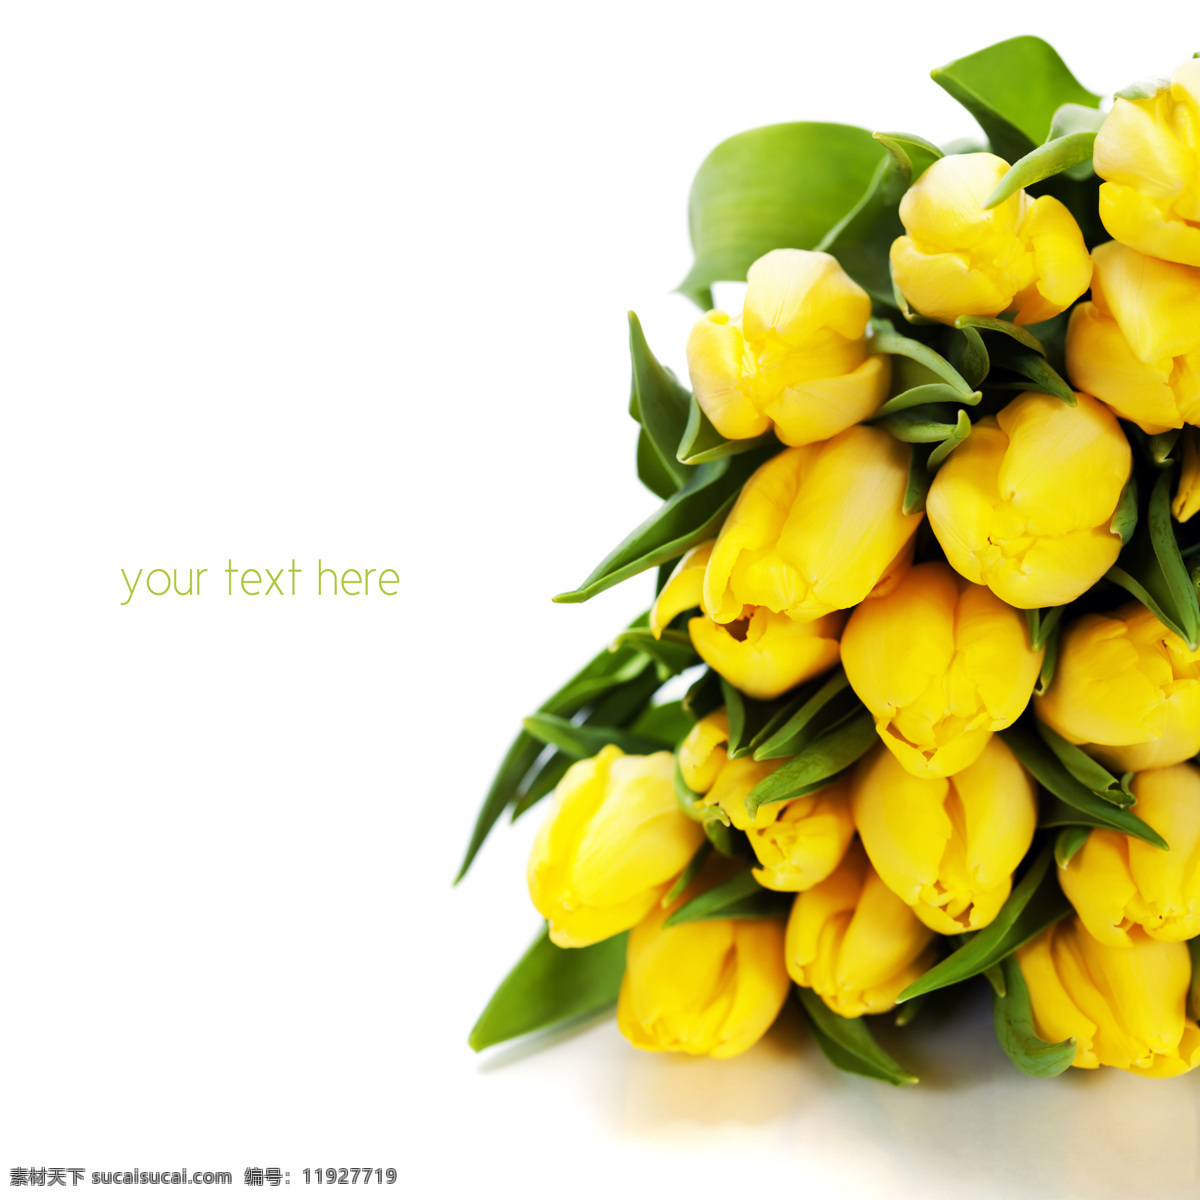 黄色 郁金香 鲜花 花朵 春天花朵 美丽鲜花 花卉 春天鲜花背景 春季花卉背景 花草树木 生物世界